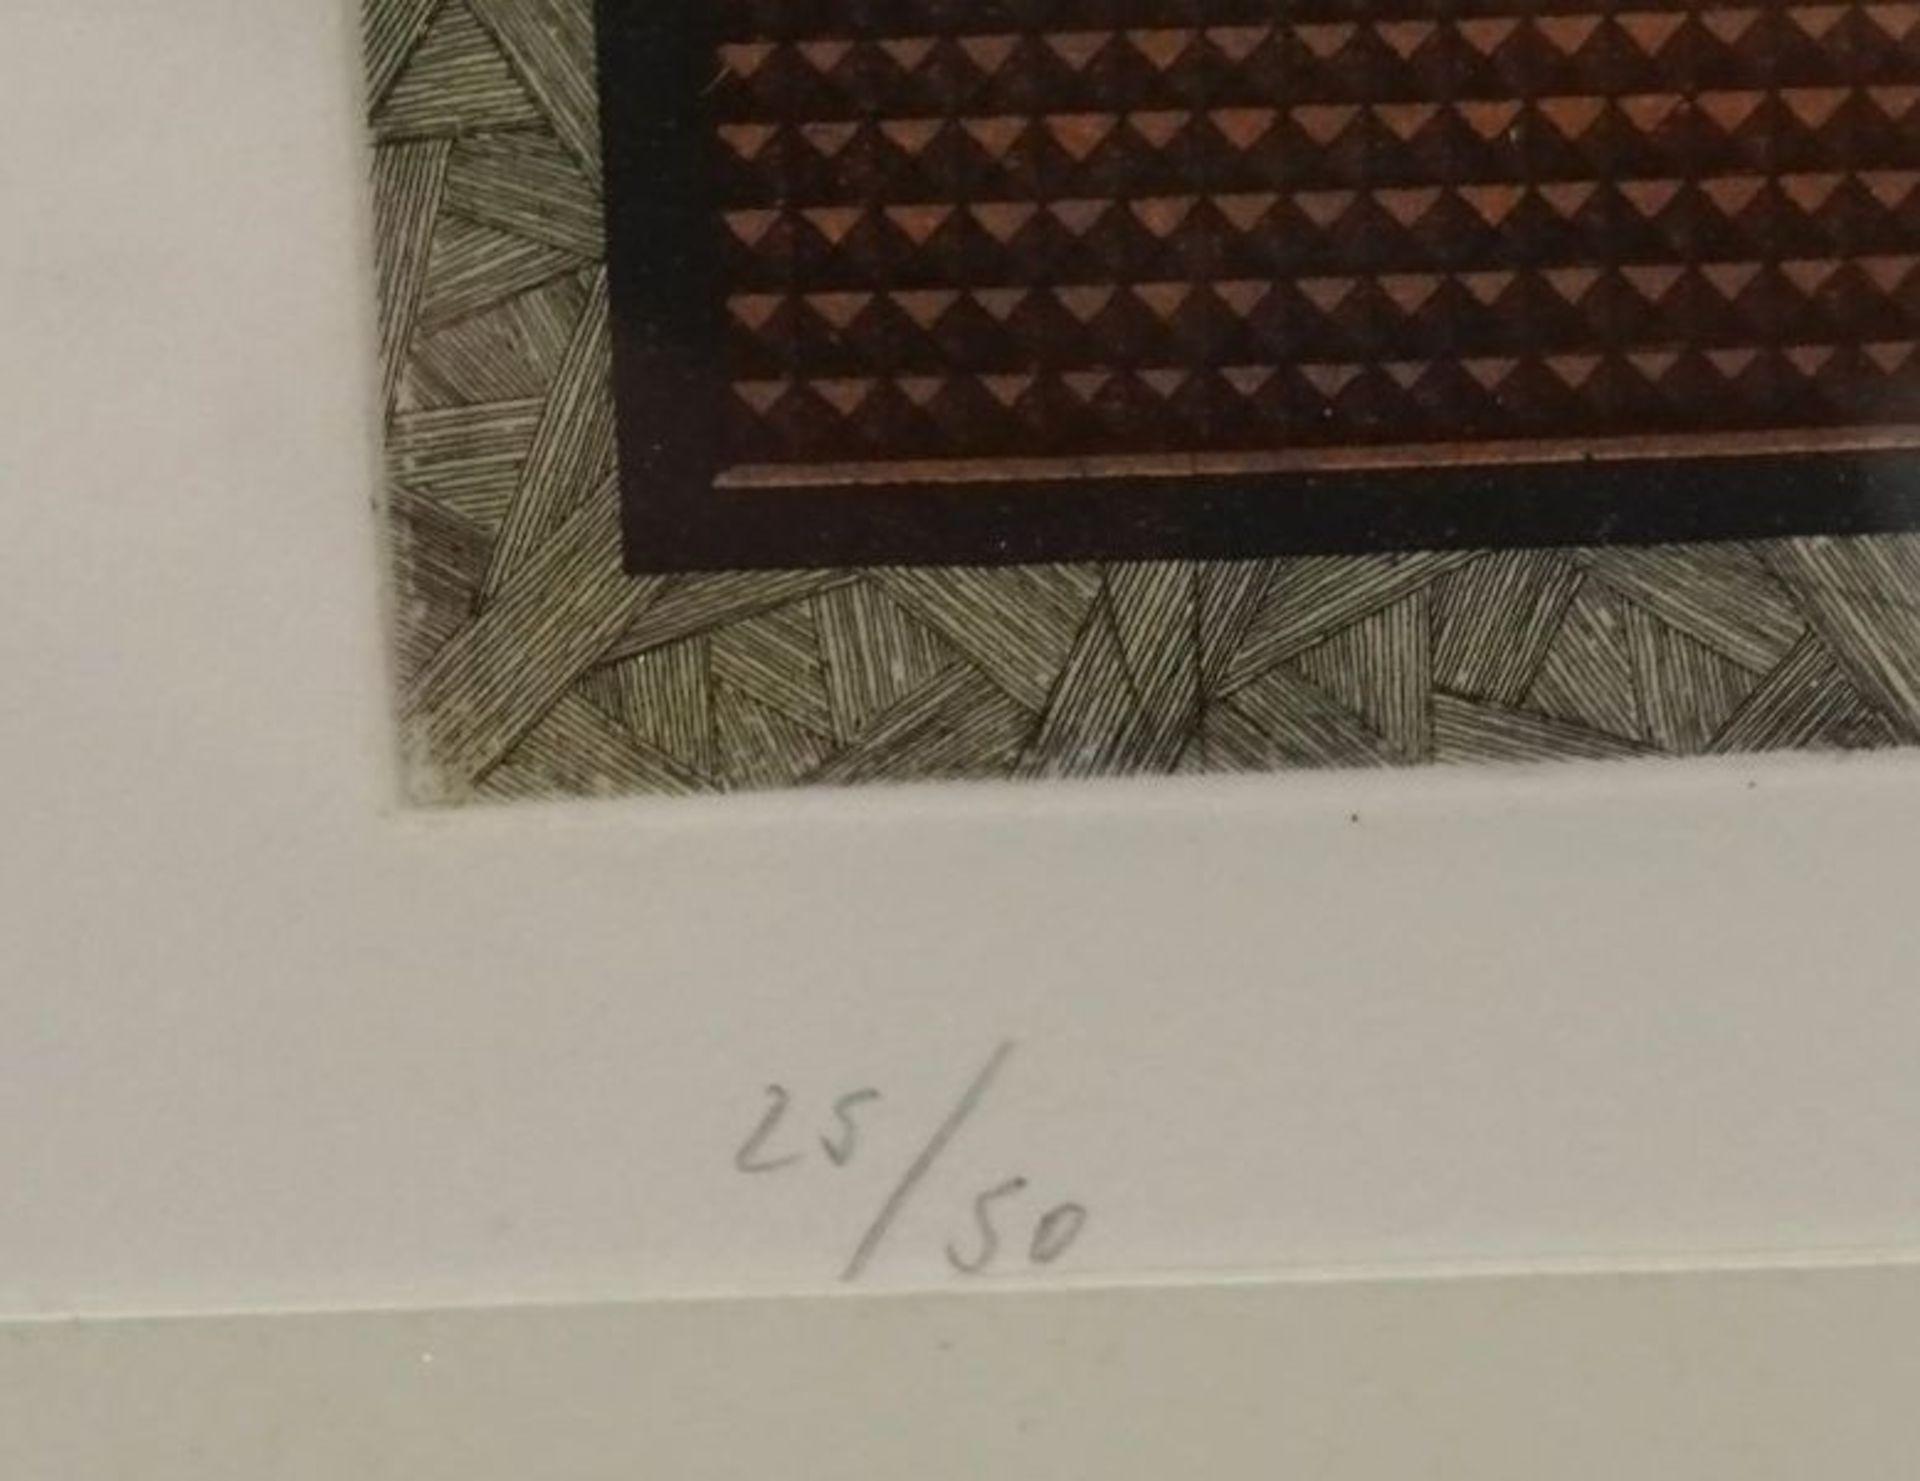 unleserl. signierte, 1981, moderne Lithografie, Nr. 25/50, ger/Glas, 70x55 cm,- - -22.61 % buyer's - Bild 4 aus 5